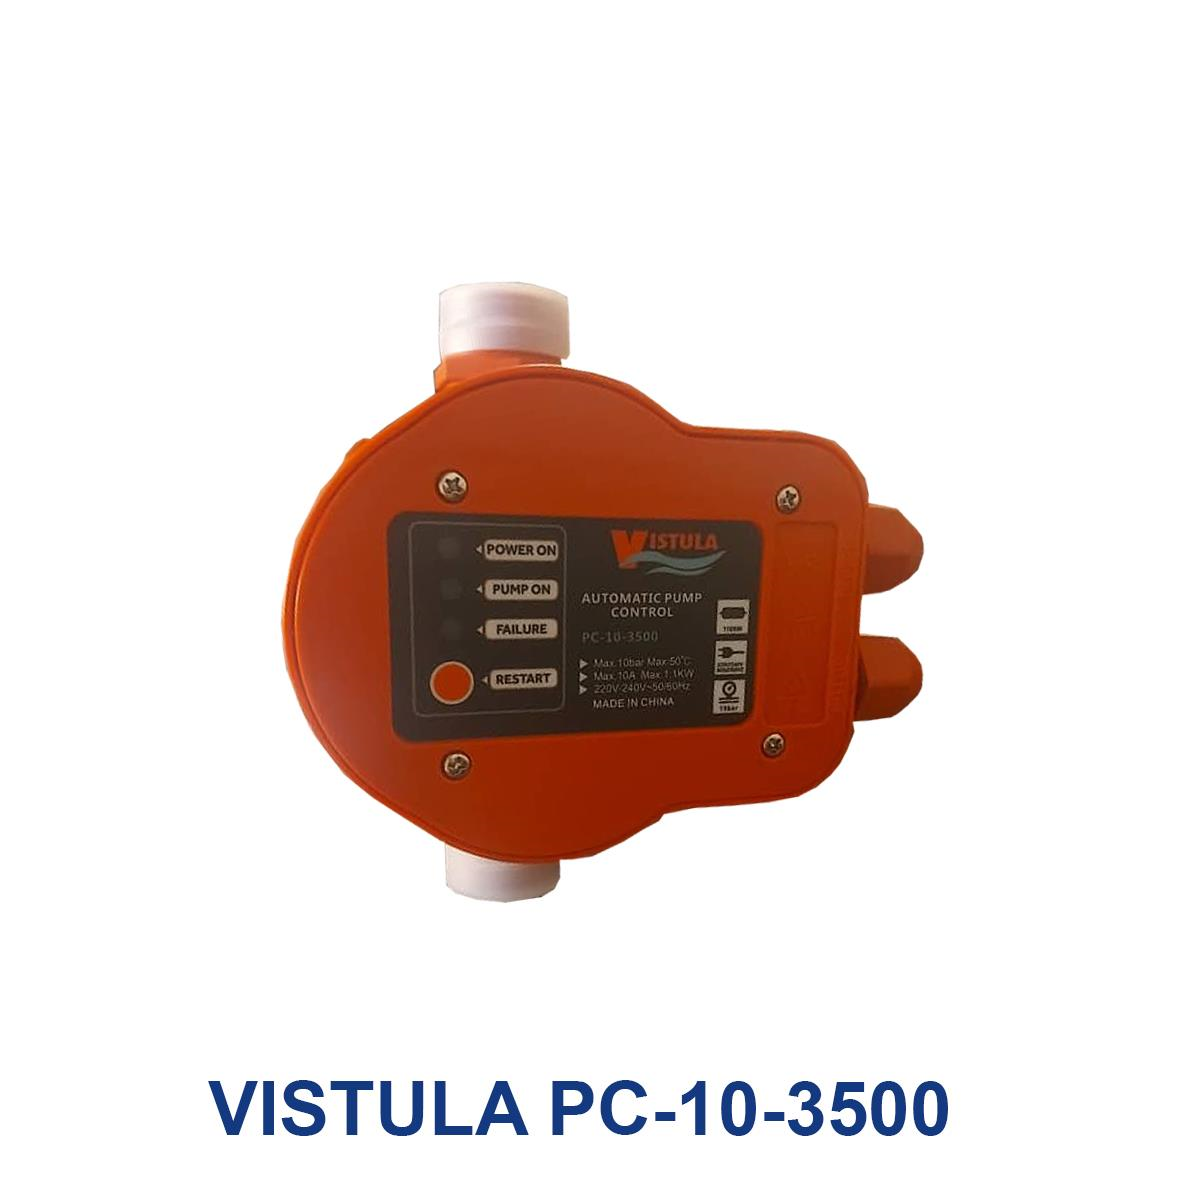 VISTULA-PC-10-3500